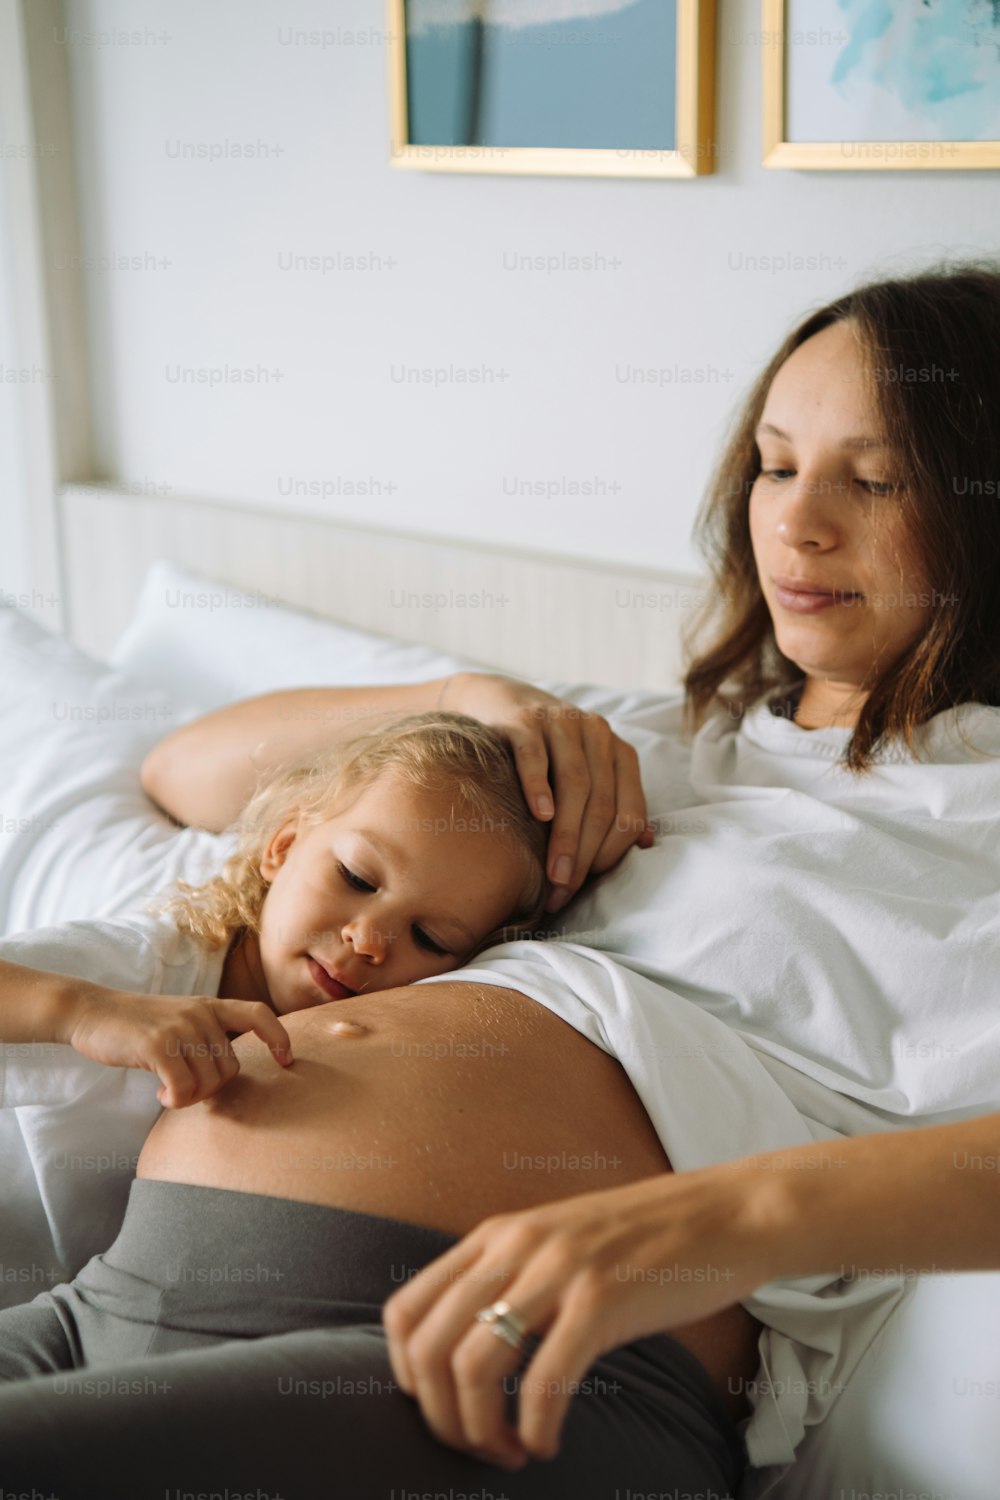 una mujer embarazada acostada en la cama con un niño